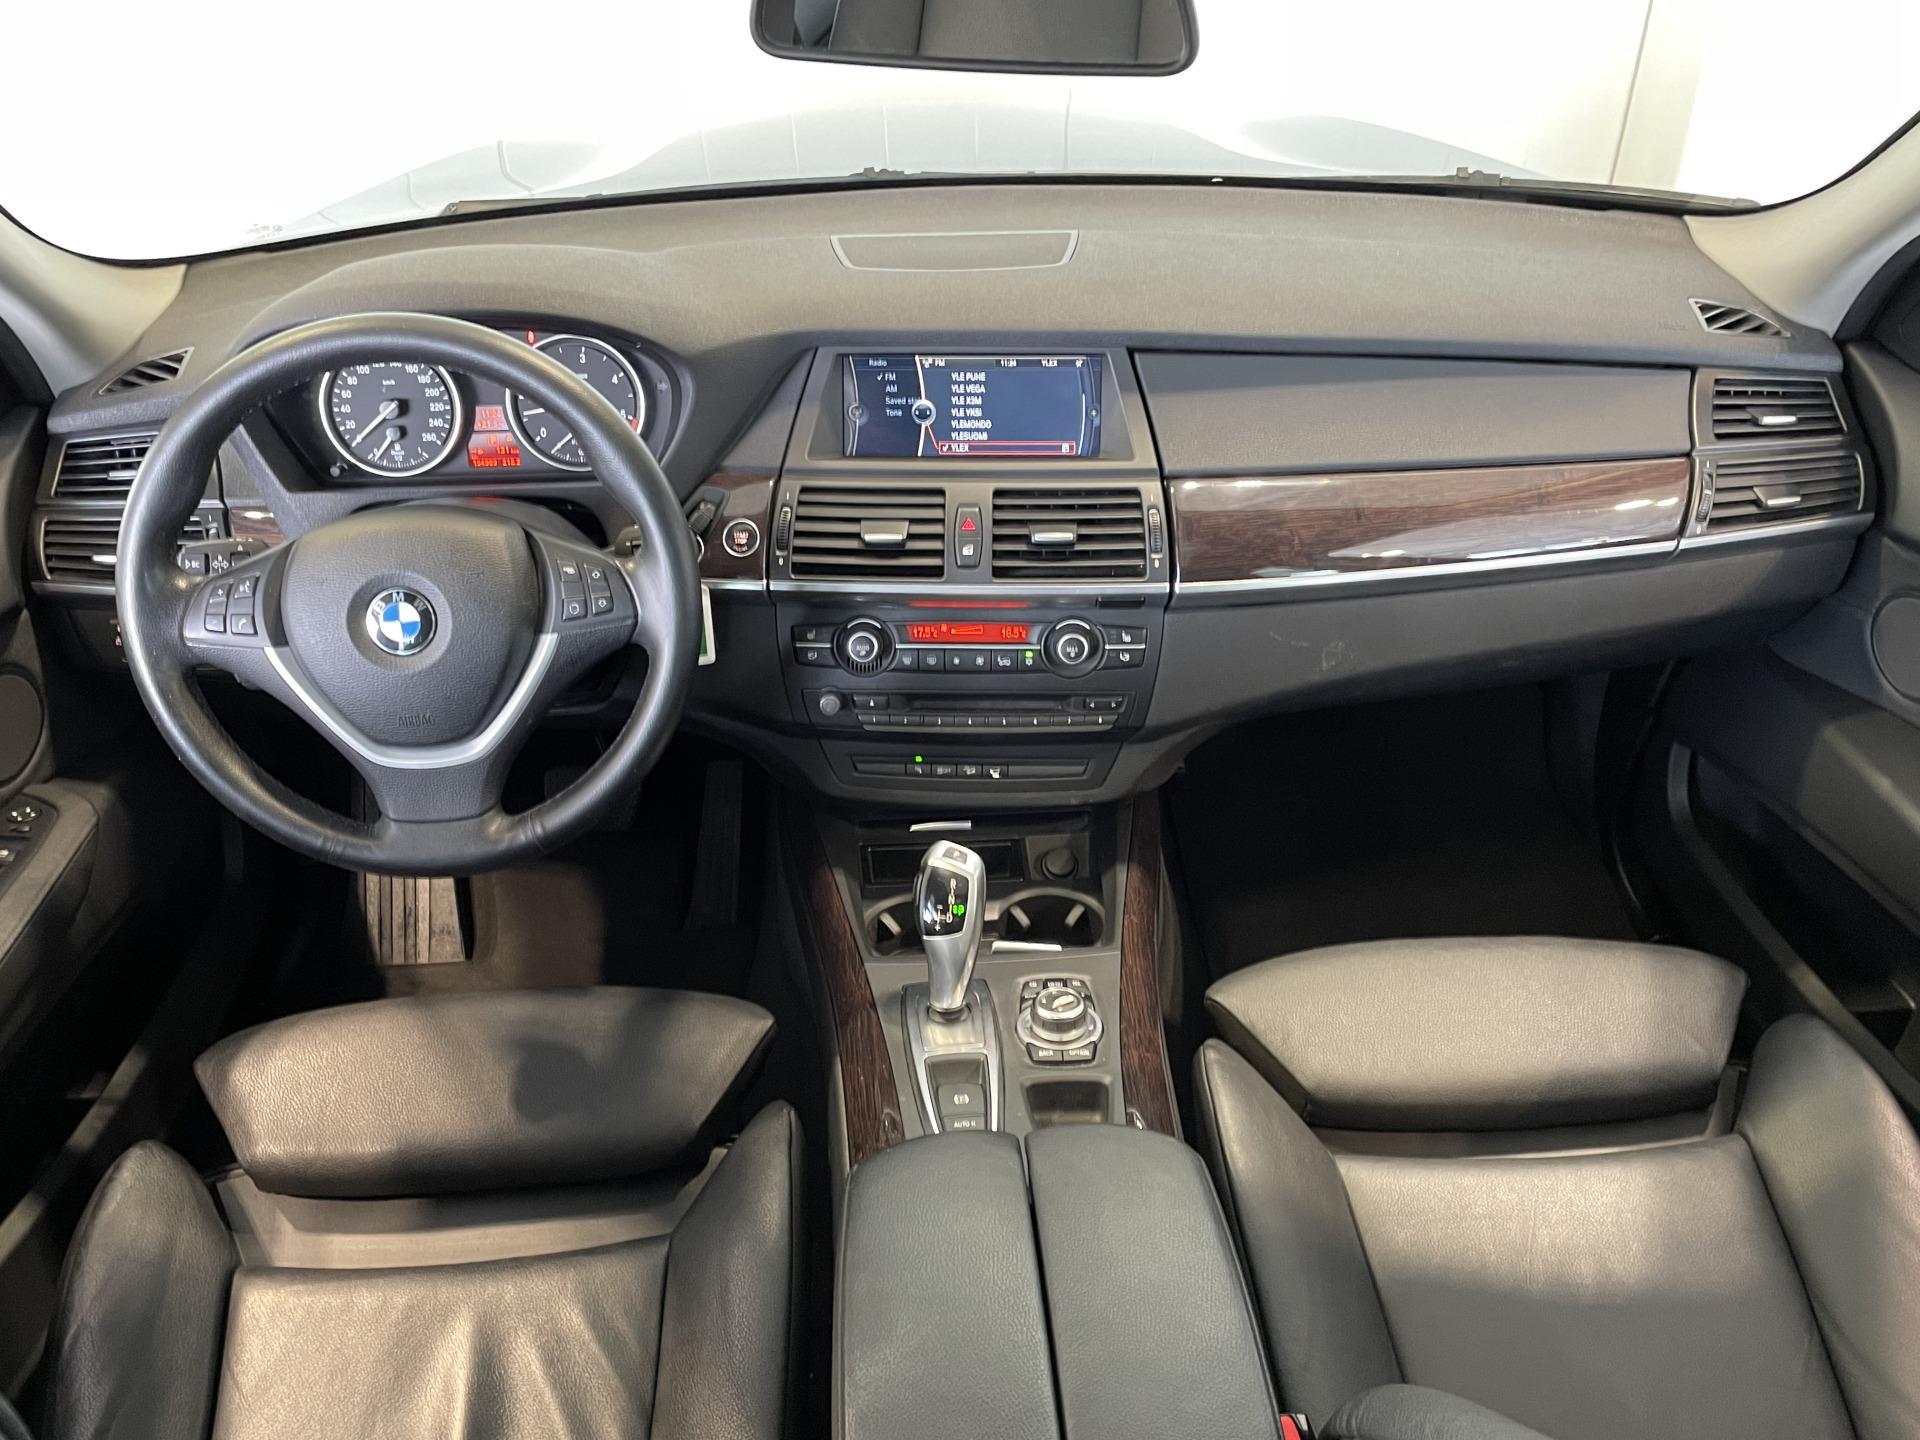 BMW X5 - EuroAuto